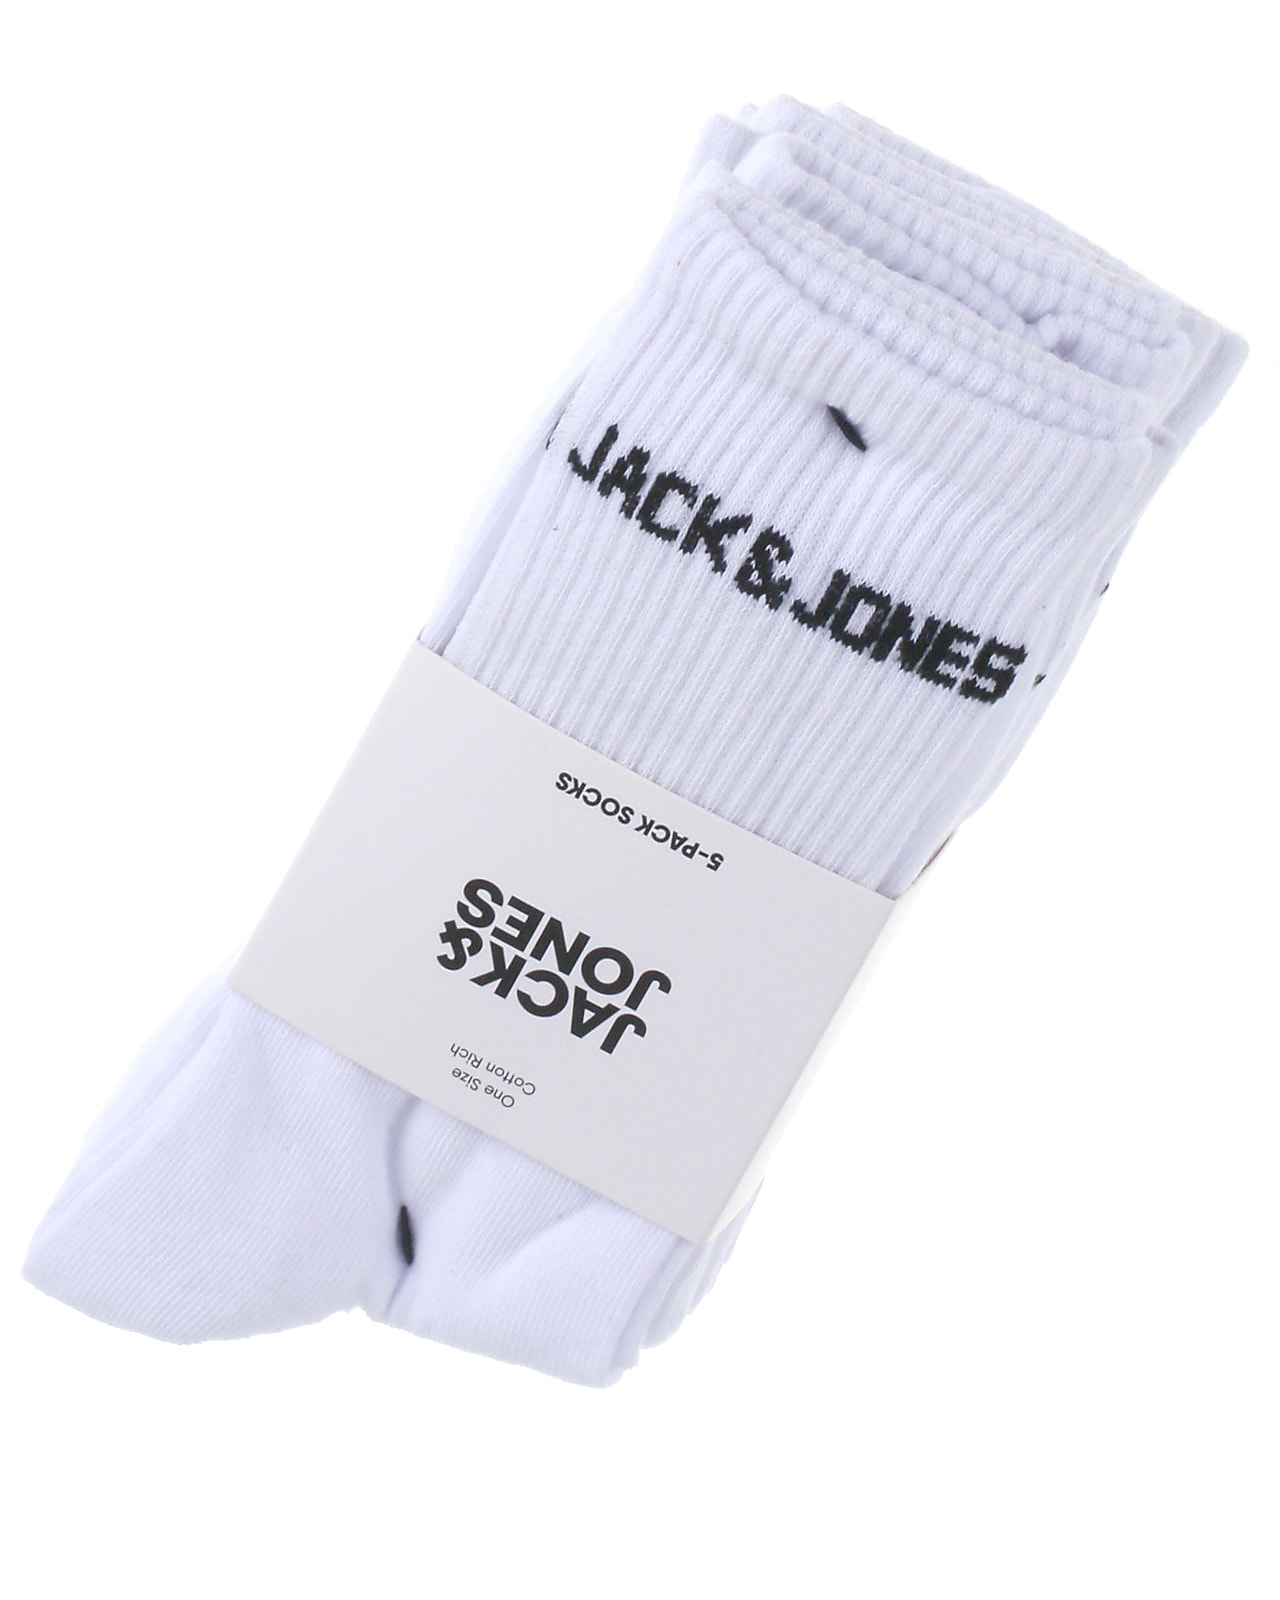 Jack & Jones 5-pak strømper, Alle slags accesories til tweens, teens og voksne her